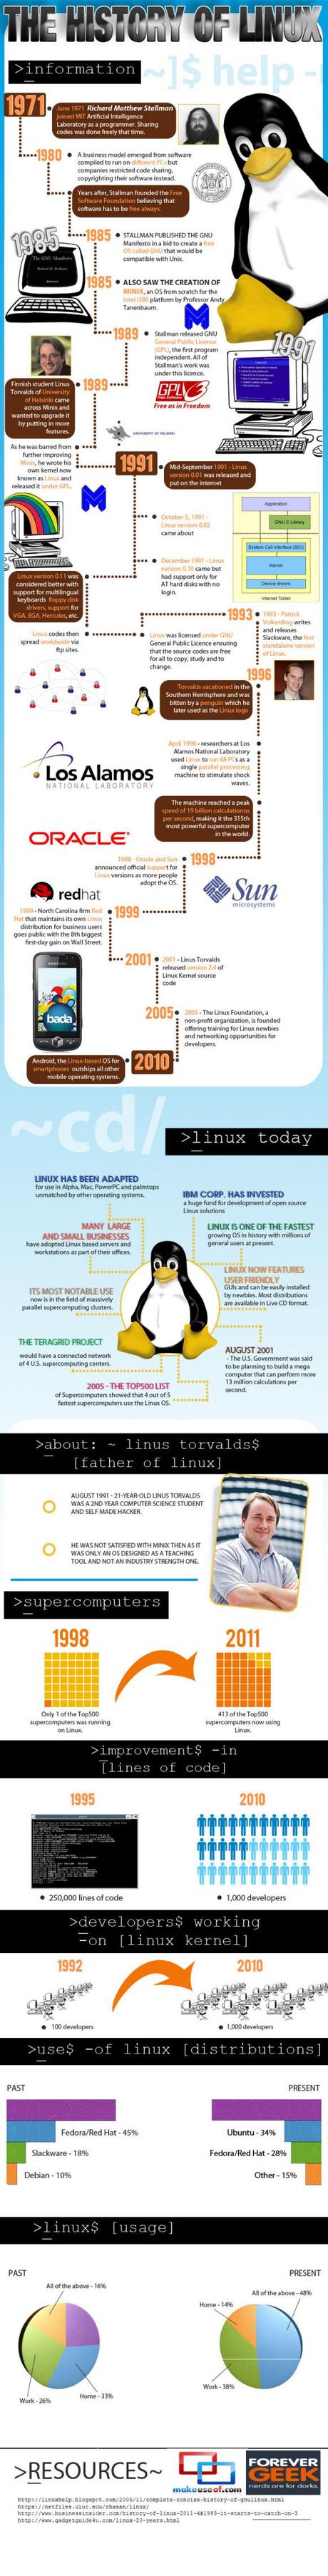 La storia di Linux, dal lontano 1971 ad oggi, passato, presente e futuro [Infografiche].